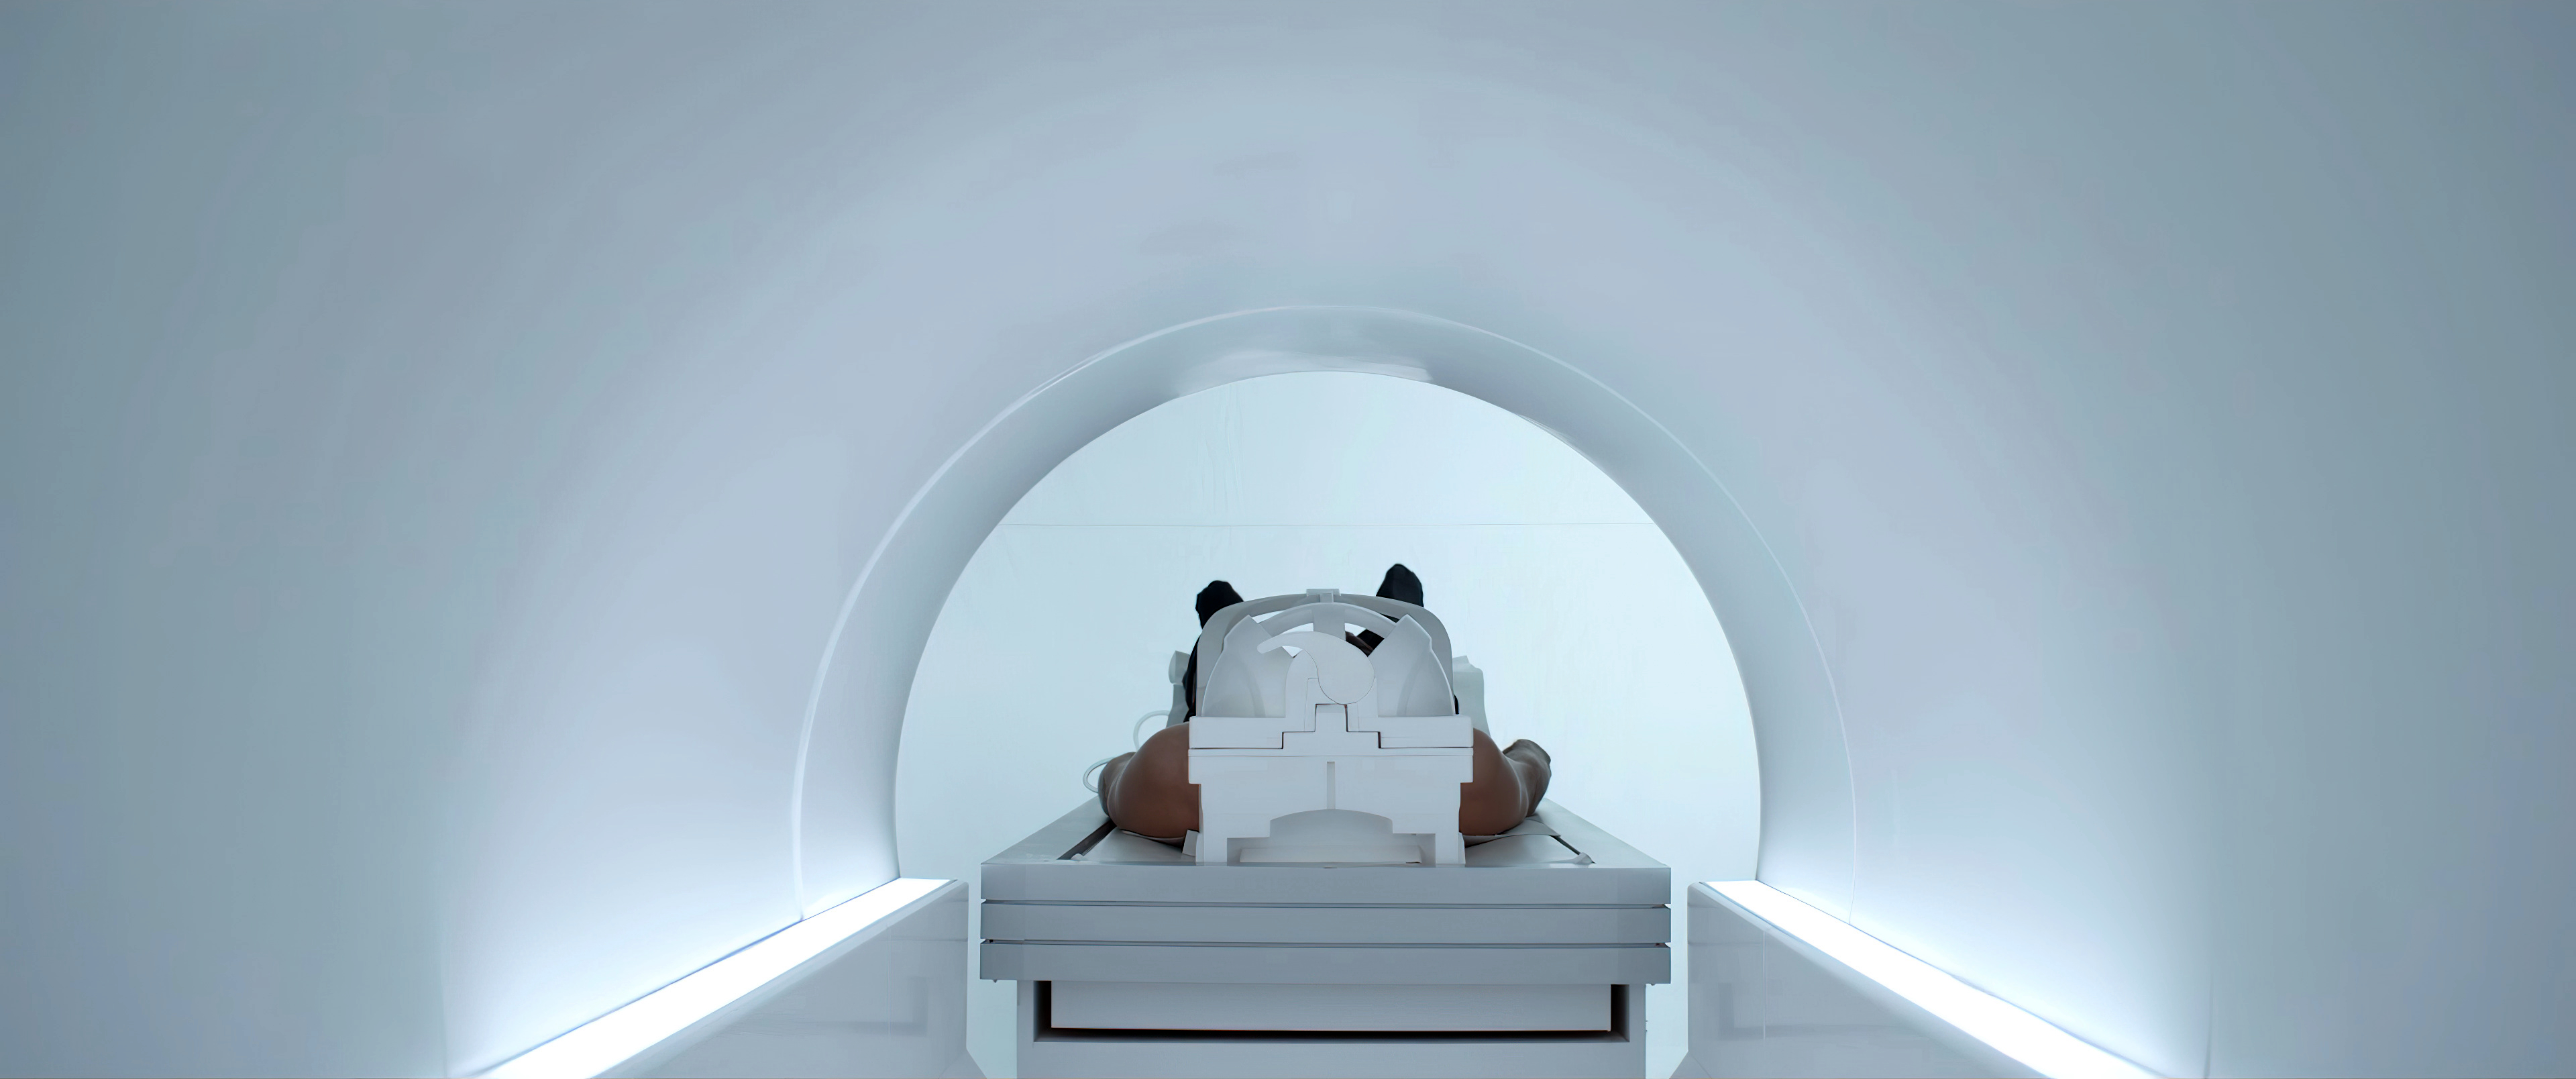 Магнитно-резонансная томография человеческого тела, Медицинское обследование, Диагностика тела